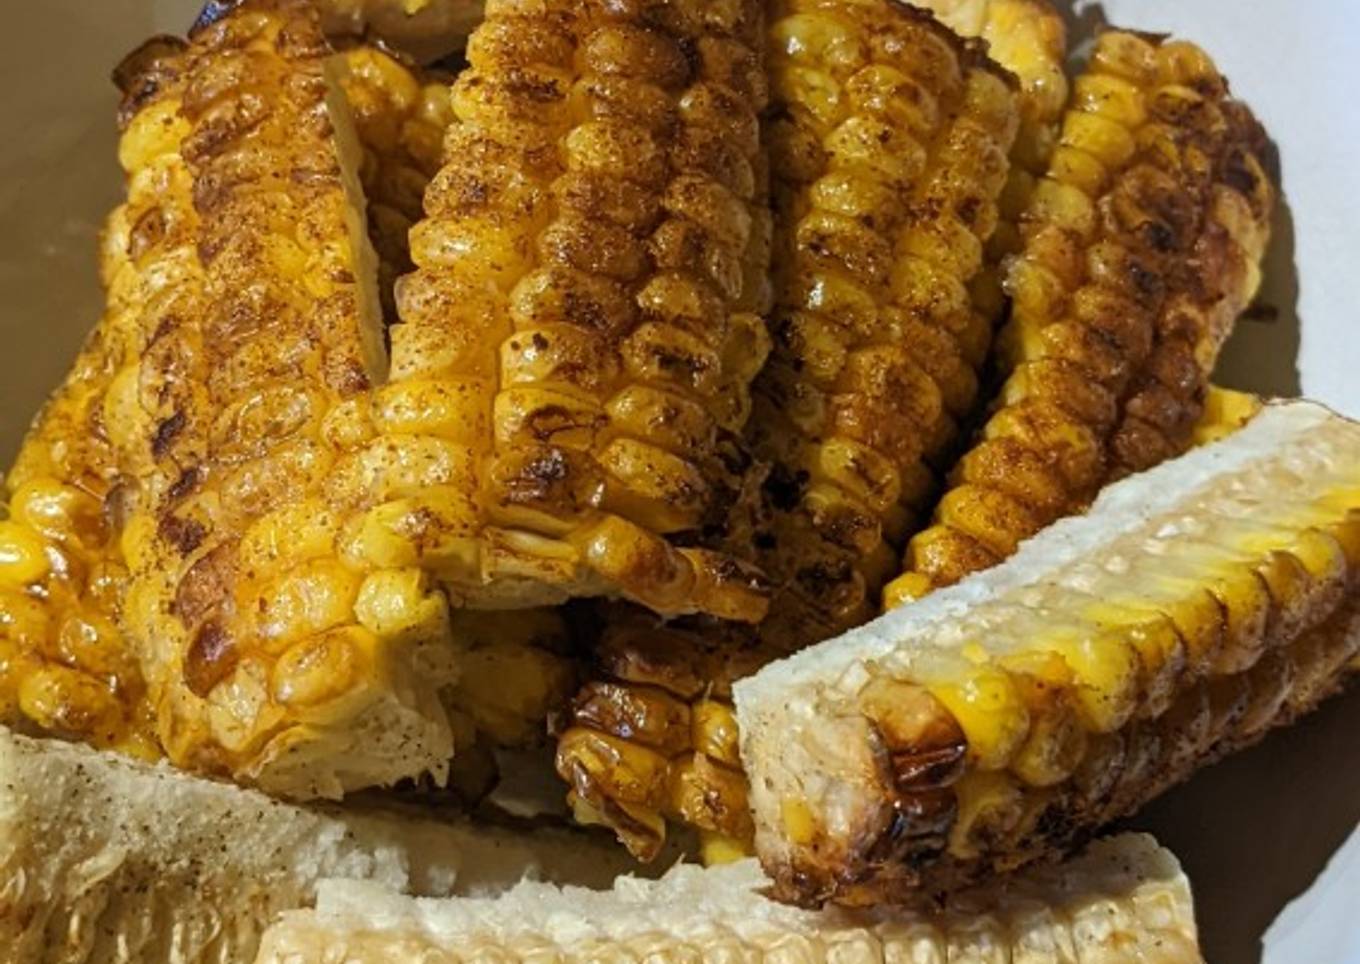 Sweet corn on the cob "ribs"